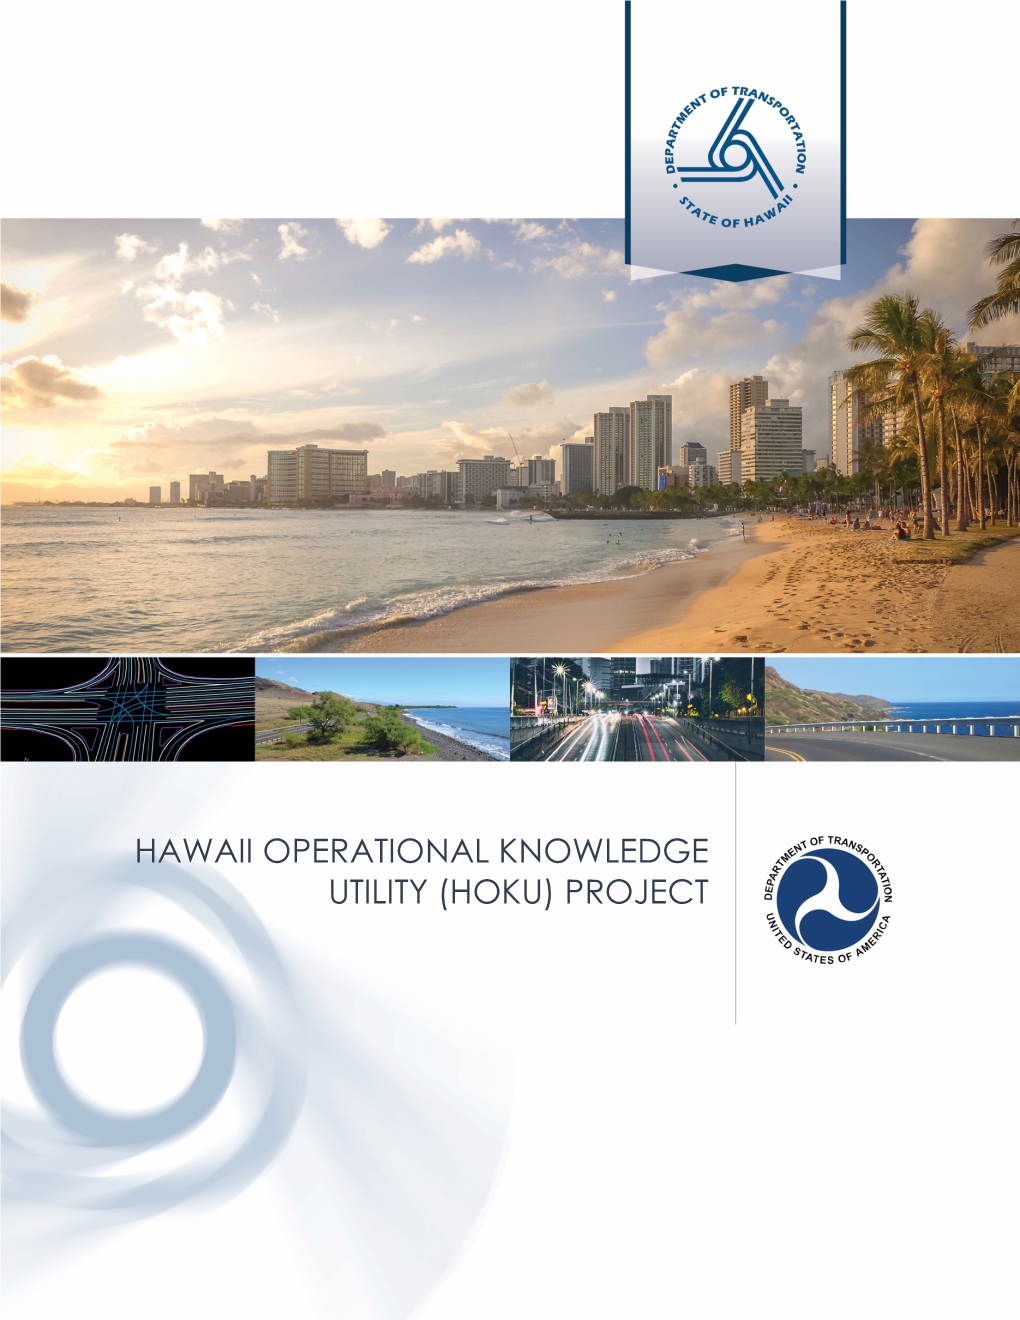 Hawaii Operational Knowledge Utility (Hoku) Project